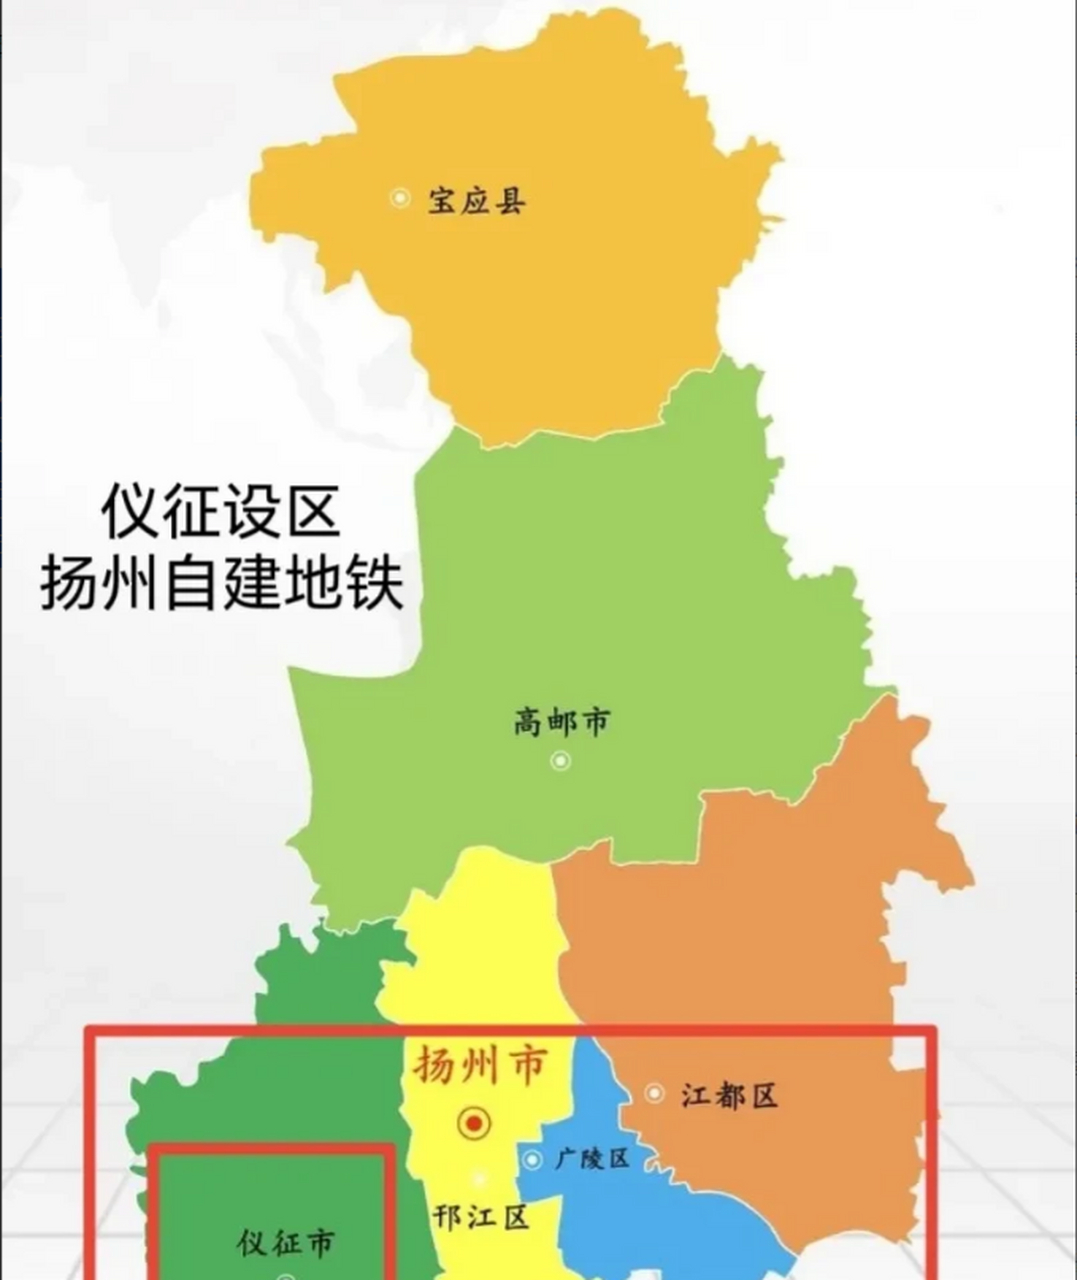 扬州的区划调整太慢了,隔壁淮安都有四个区,扬州还只保留三个区,完全